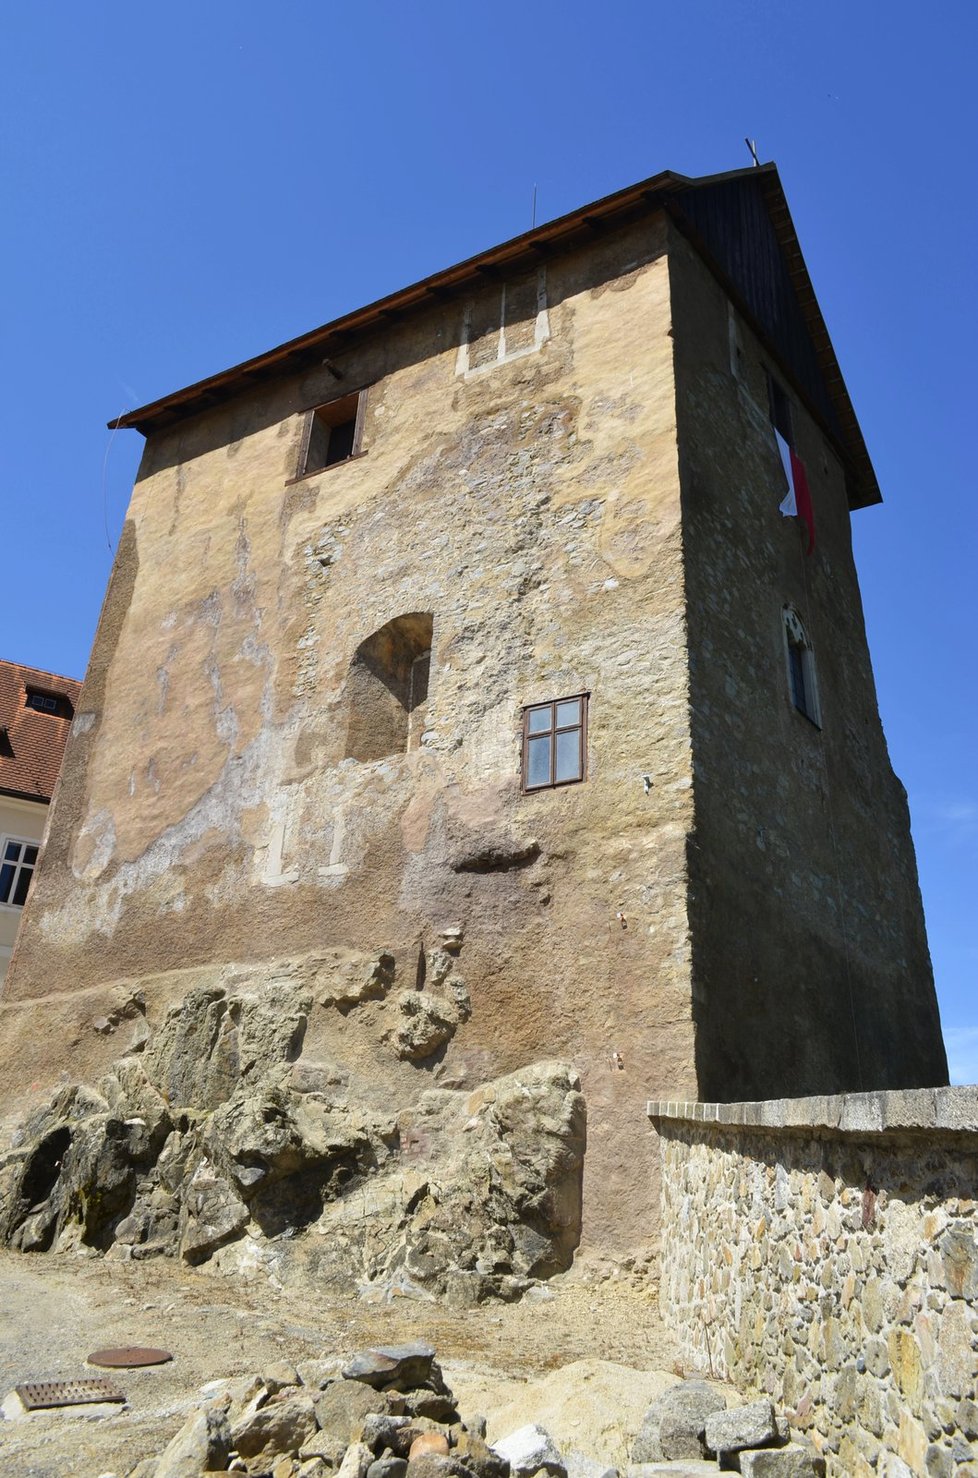 Tohle je věž hradu, kde se relikviář sv. Maura a lahve s víny našly.